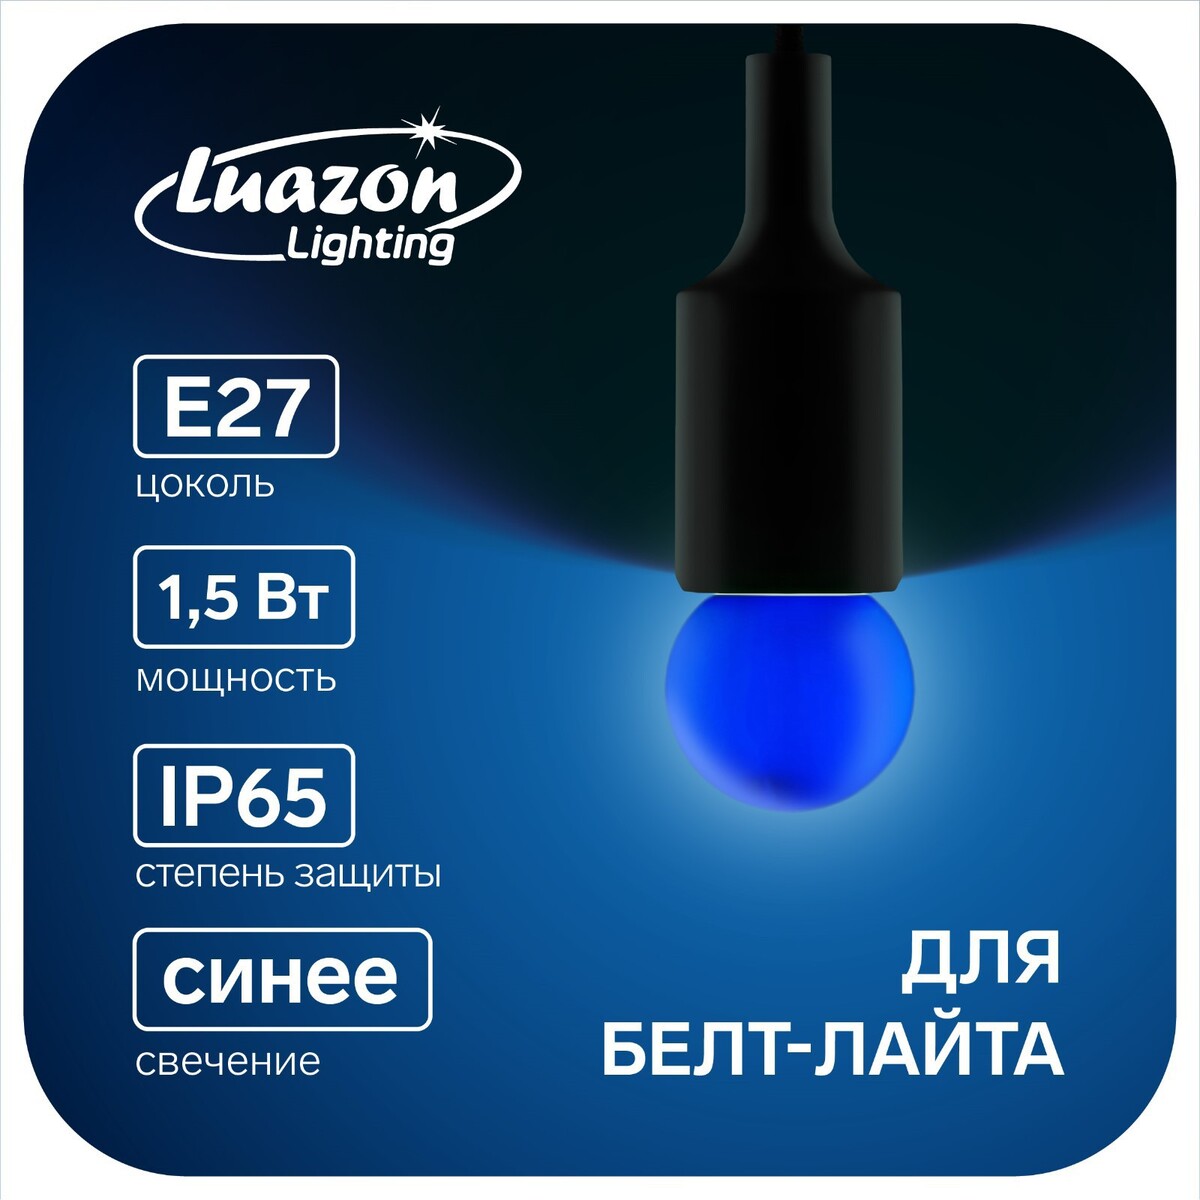 Лампа светодиодная luazon lighting, g45, е27, 1.5 вт, для белт-лайта, синяя, наб 20 шт лампа светодиодная ecola t8 12 5 вт g13 4000 k 605x28 пов цоколь матовая